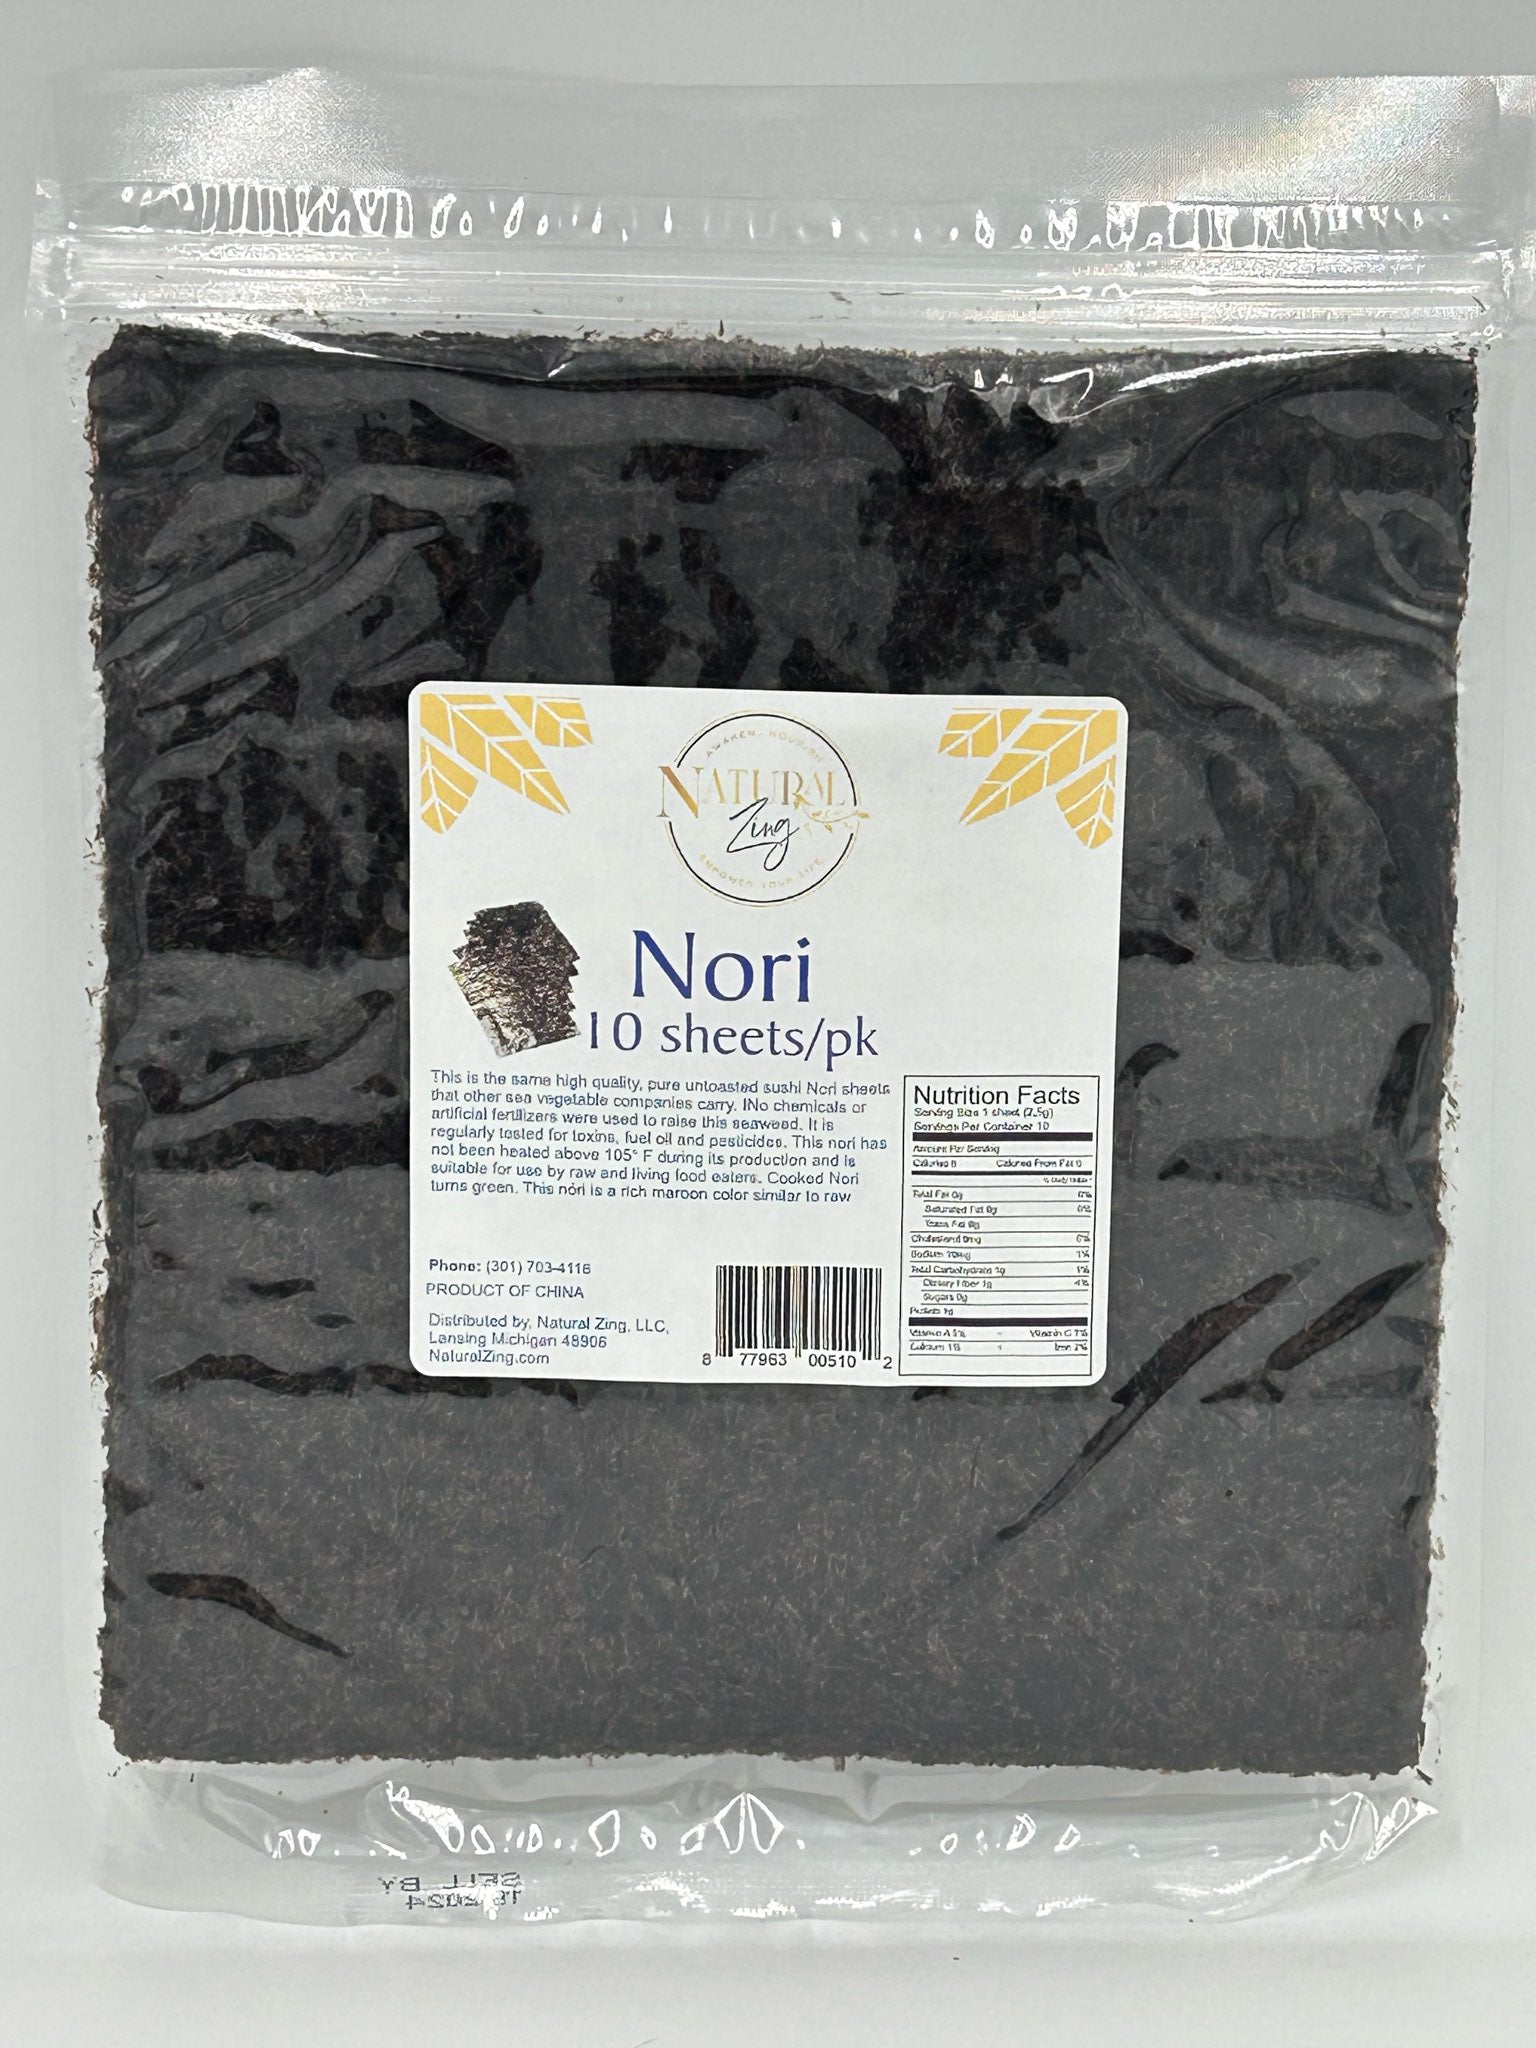 Nori, Natural Zing 10 sheets/pk